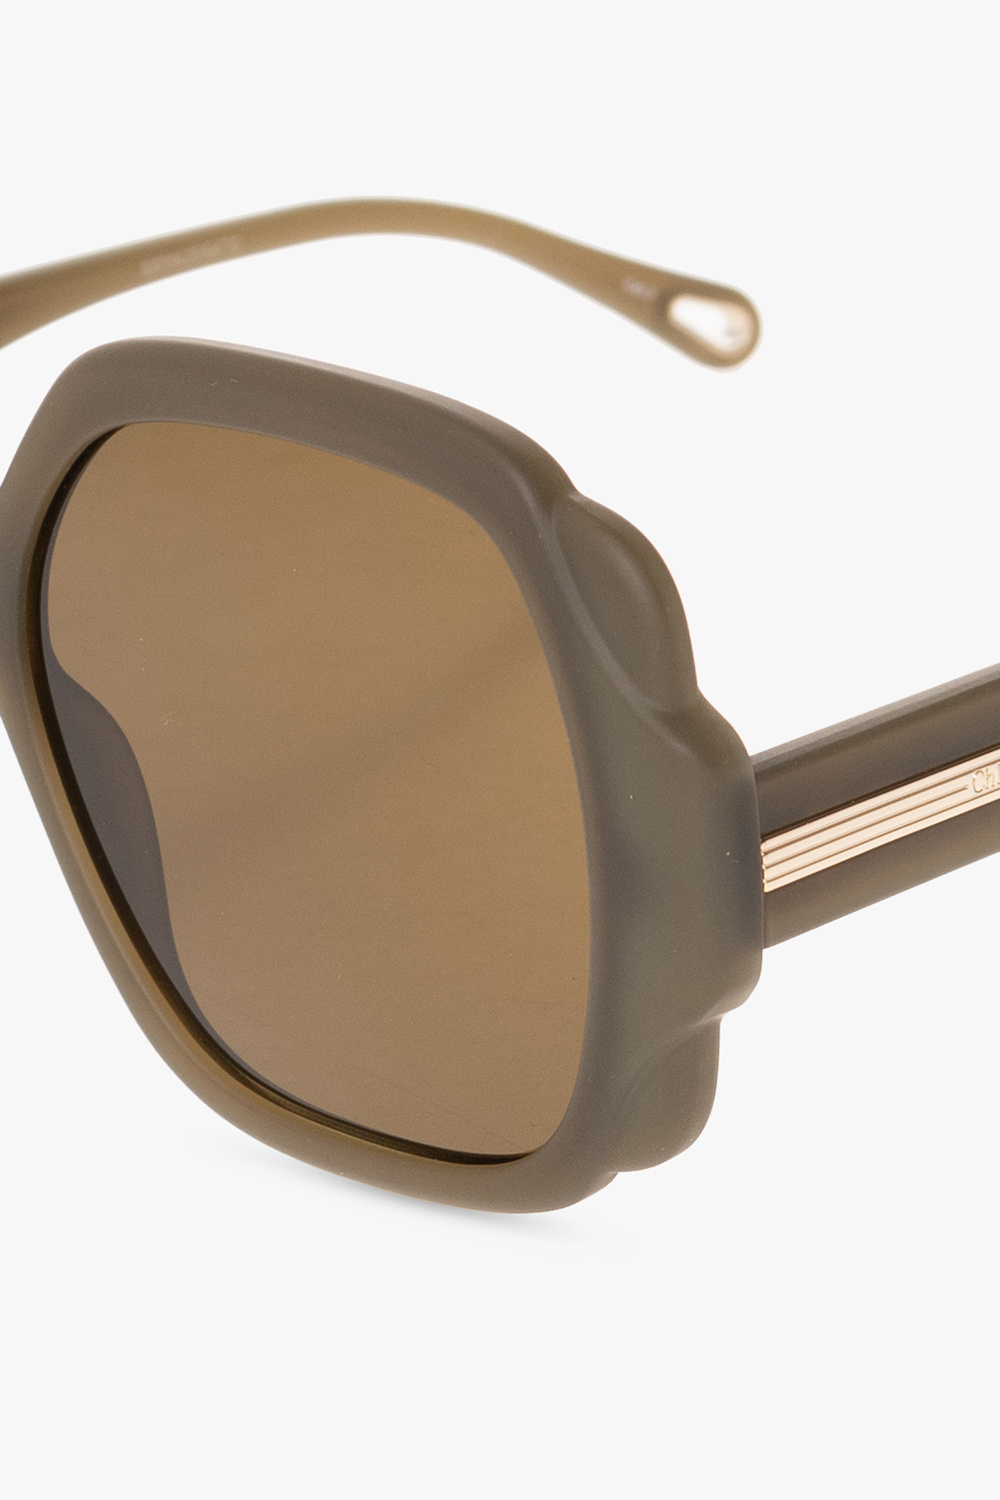 Chloé Square frame elite sunglasses